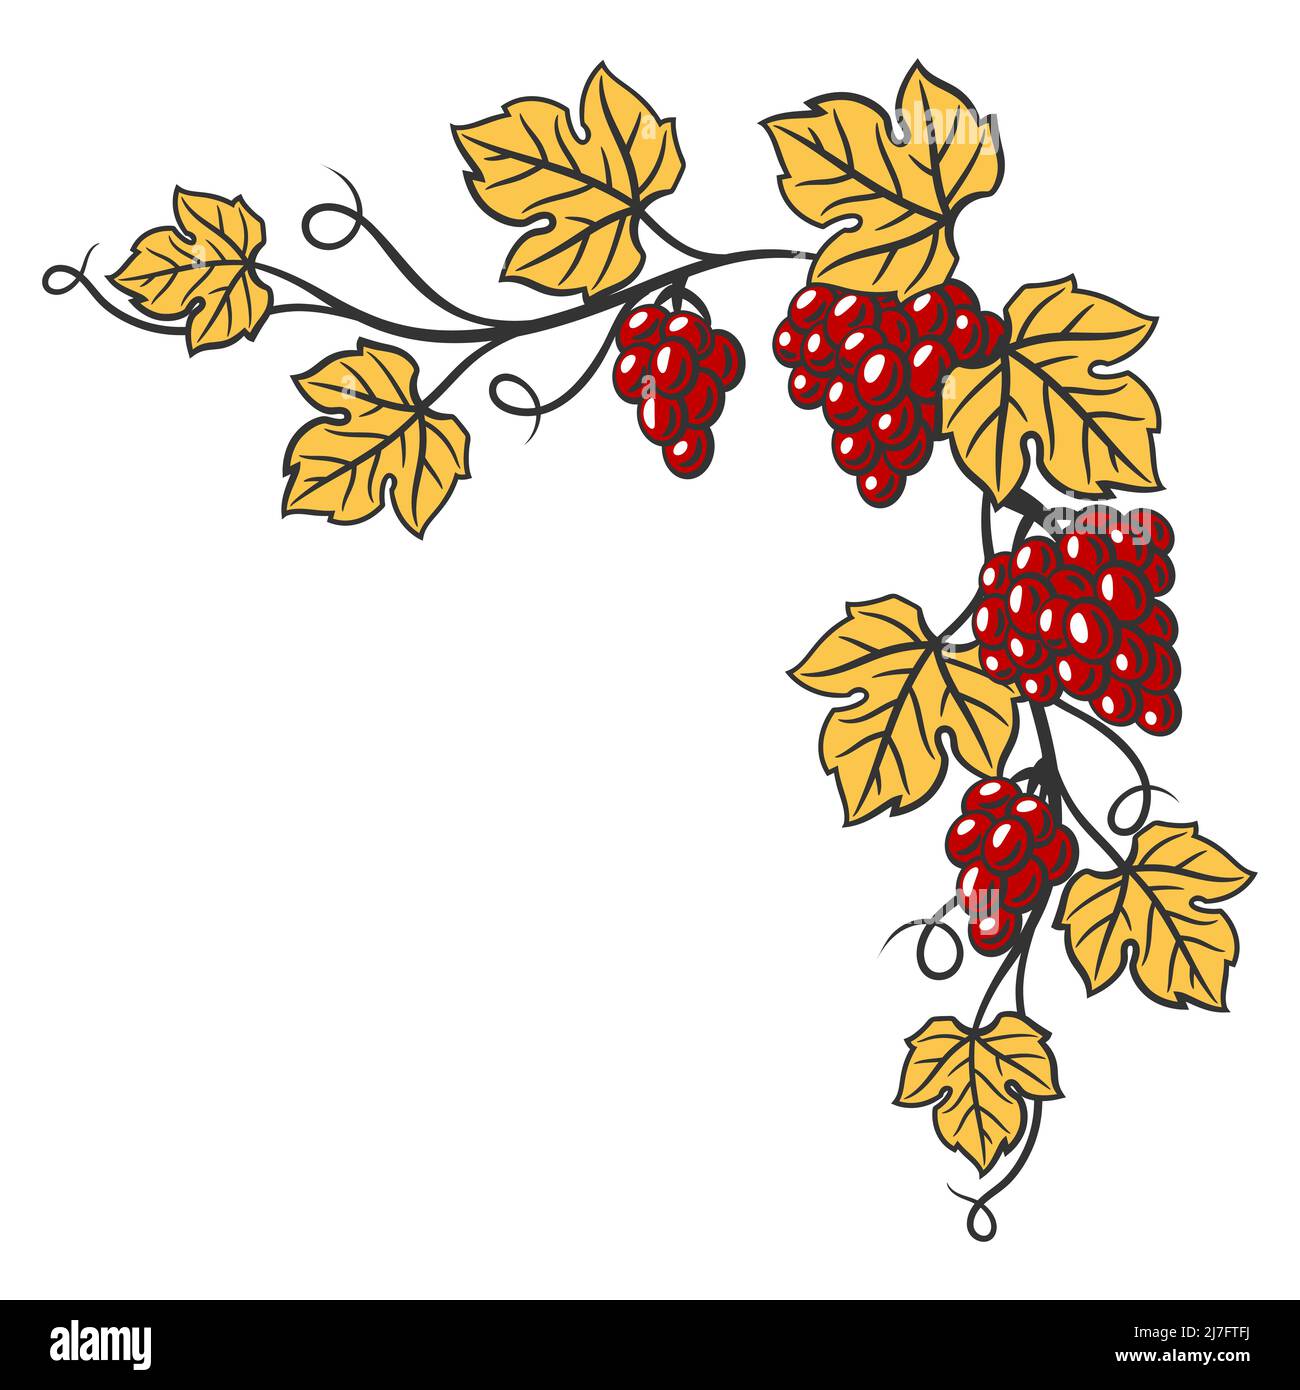 Cornice di vite con foglie e grappoli di uva. Immagine della cantina per ristoranti e bar. Voce commerciale e agricola. Illustrazione Vettoriale